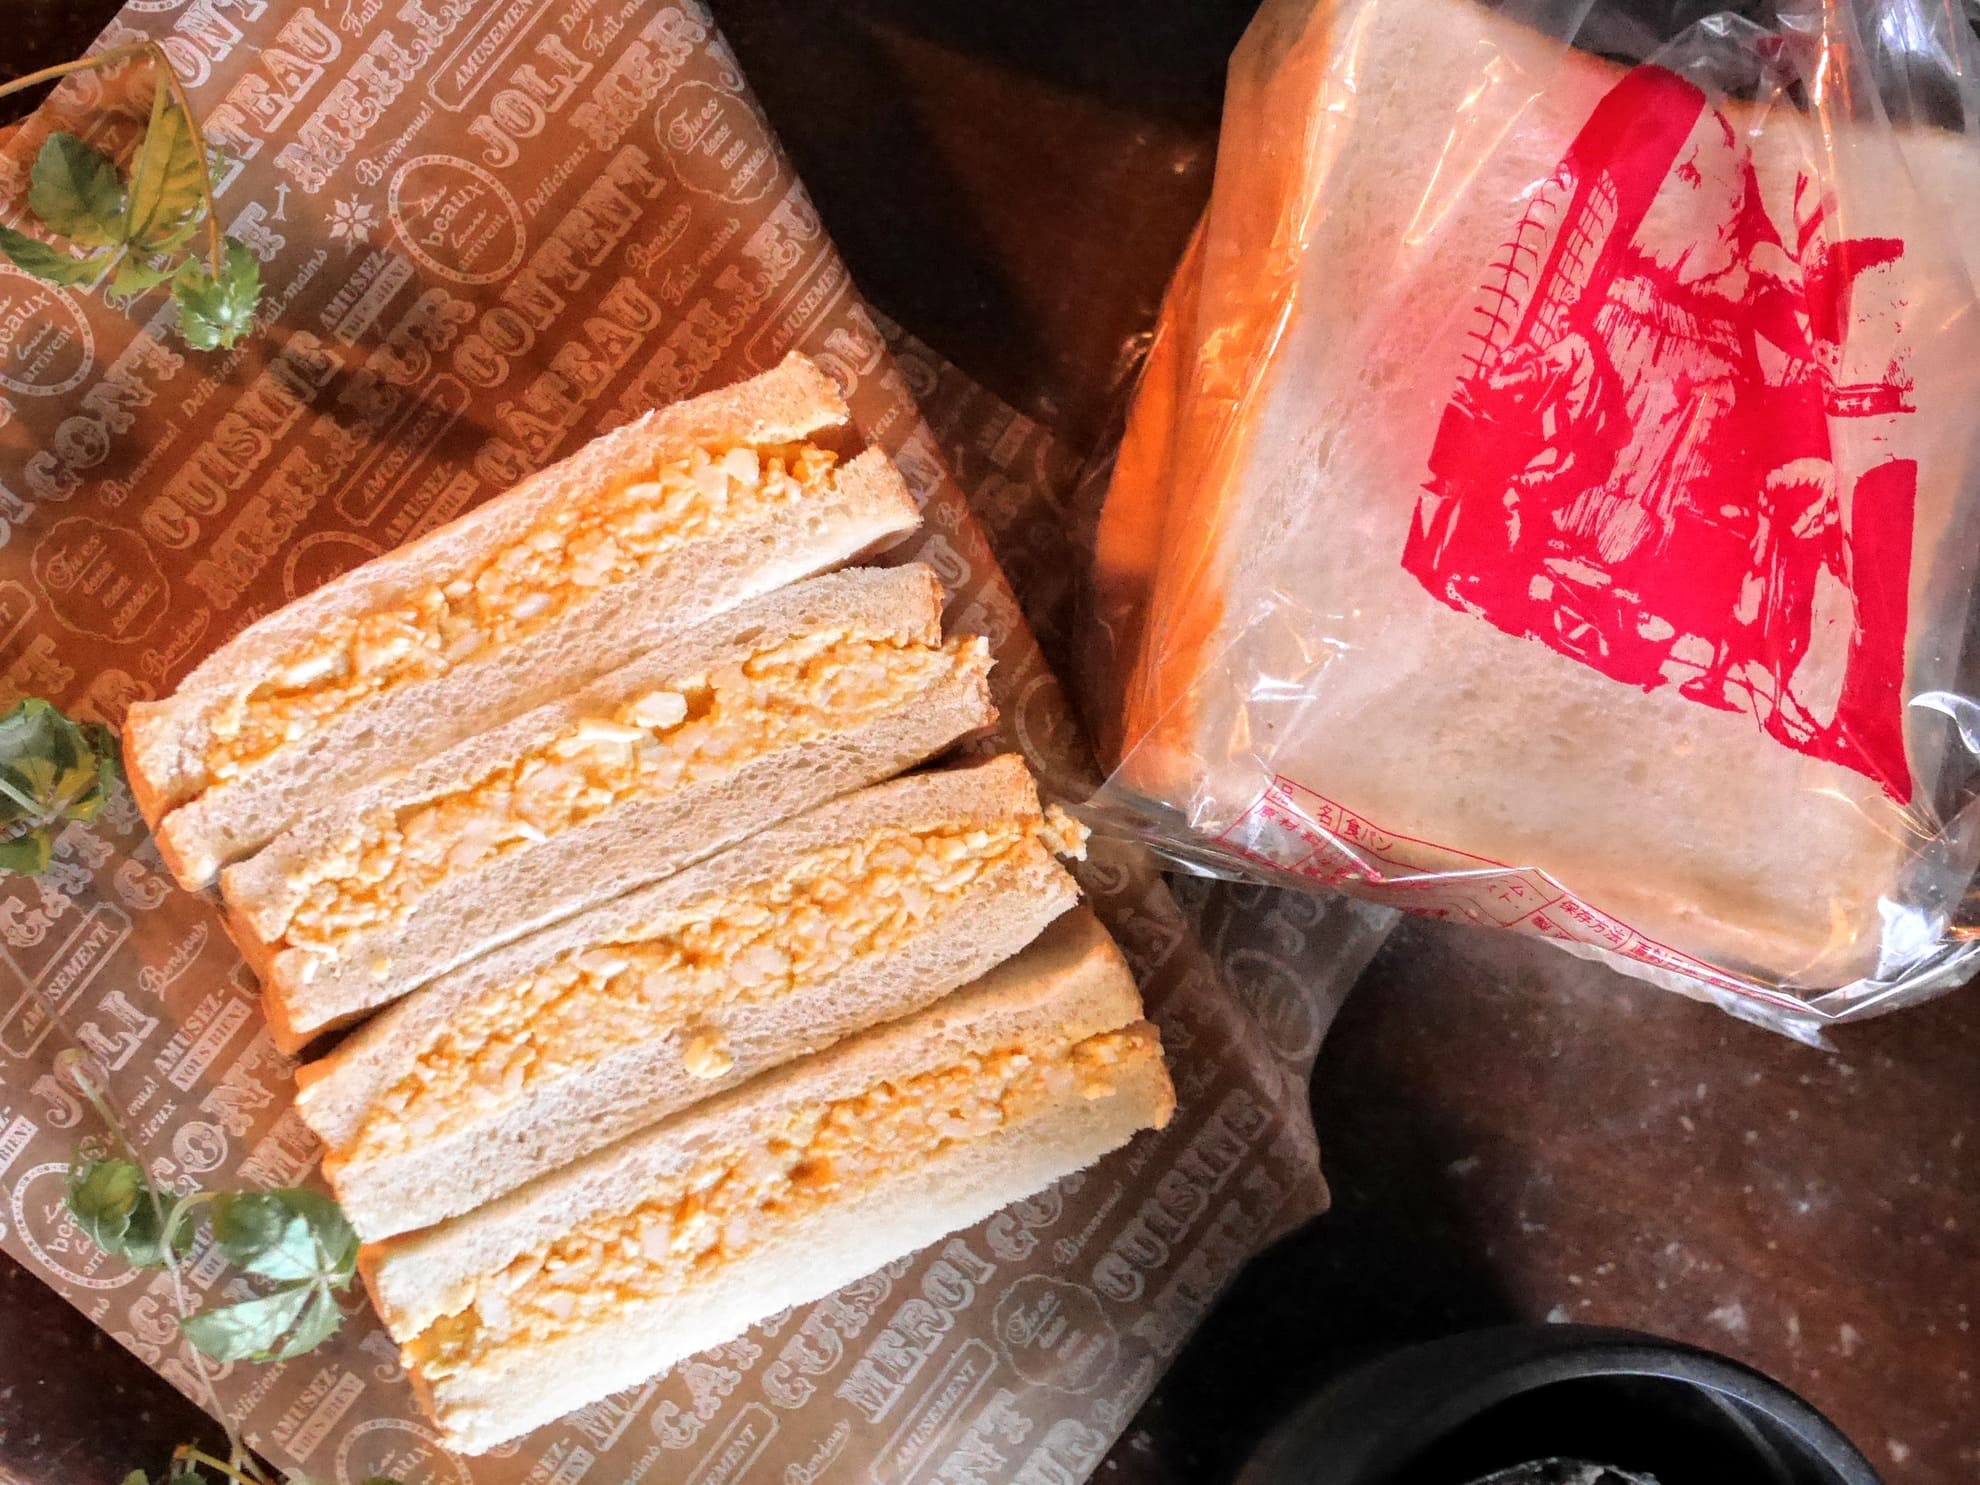 究極の玉子サンド トミーズは あん食 だけじゃないっ シンプルな食パンも美味しいのであるっ 大阪のたまごサンドしらんの